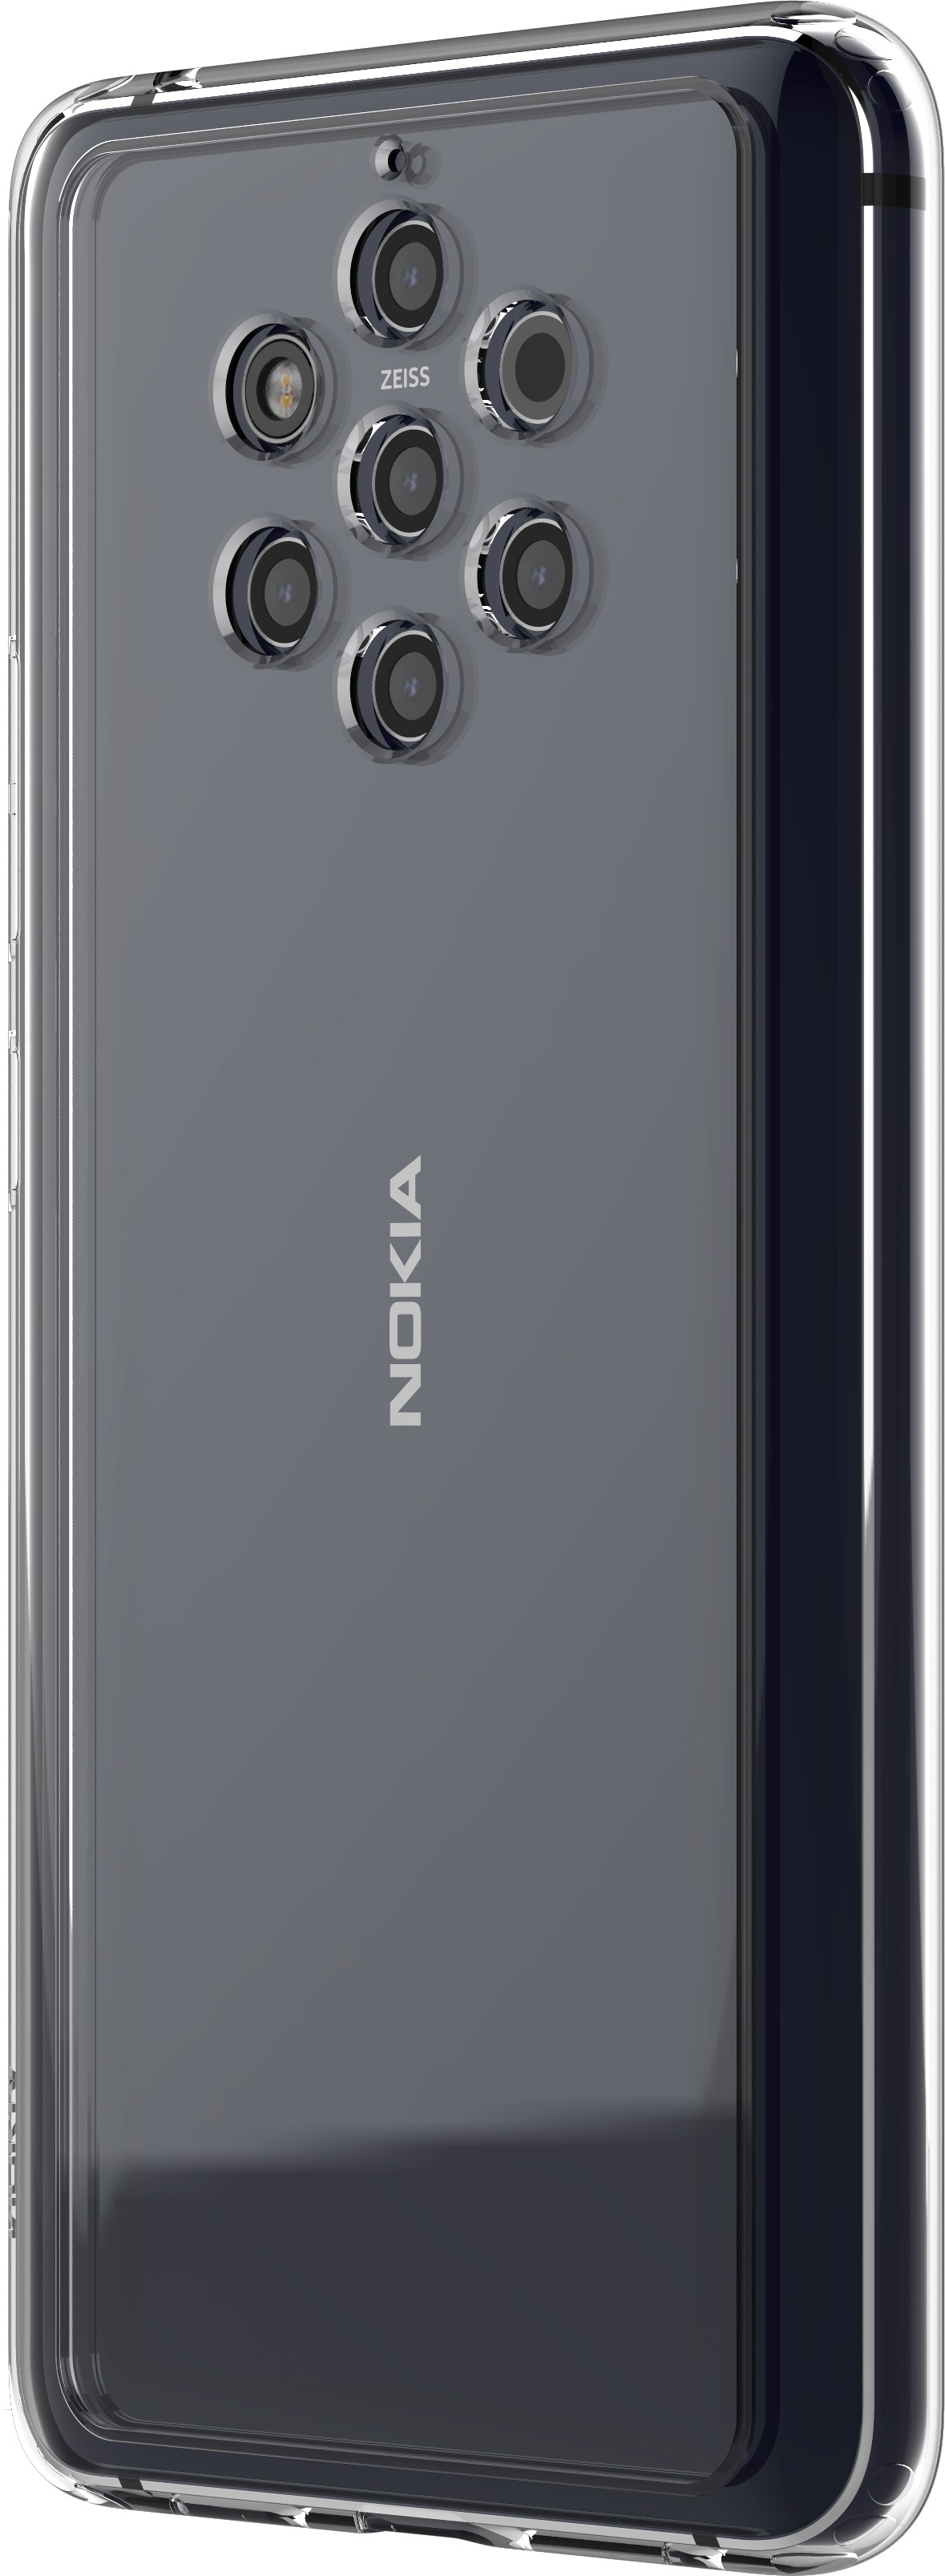 9 PureView, Case Backcover, Transparent Premium CC-190, Clear Nokia, NOKIA